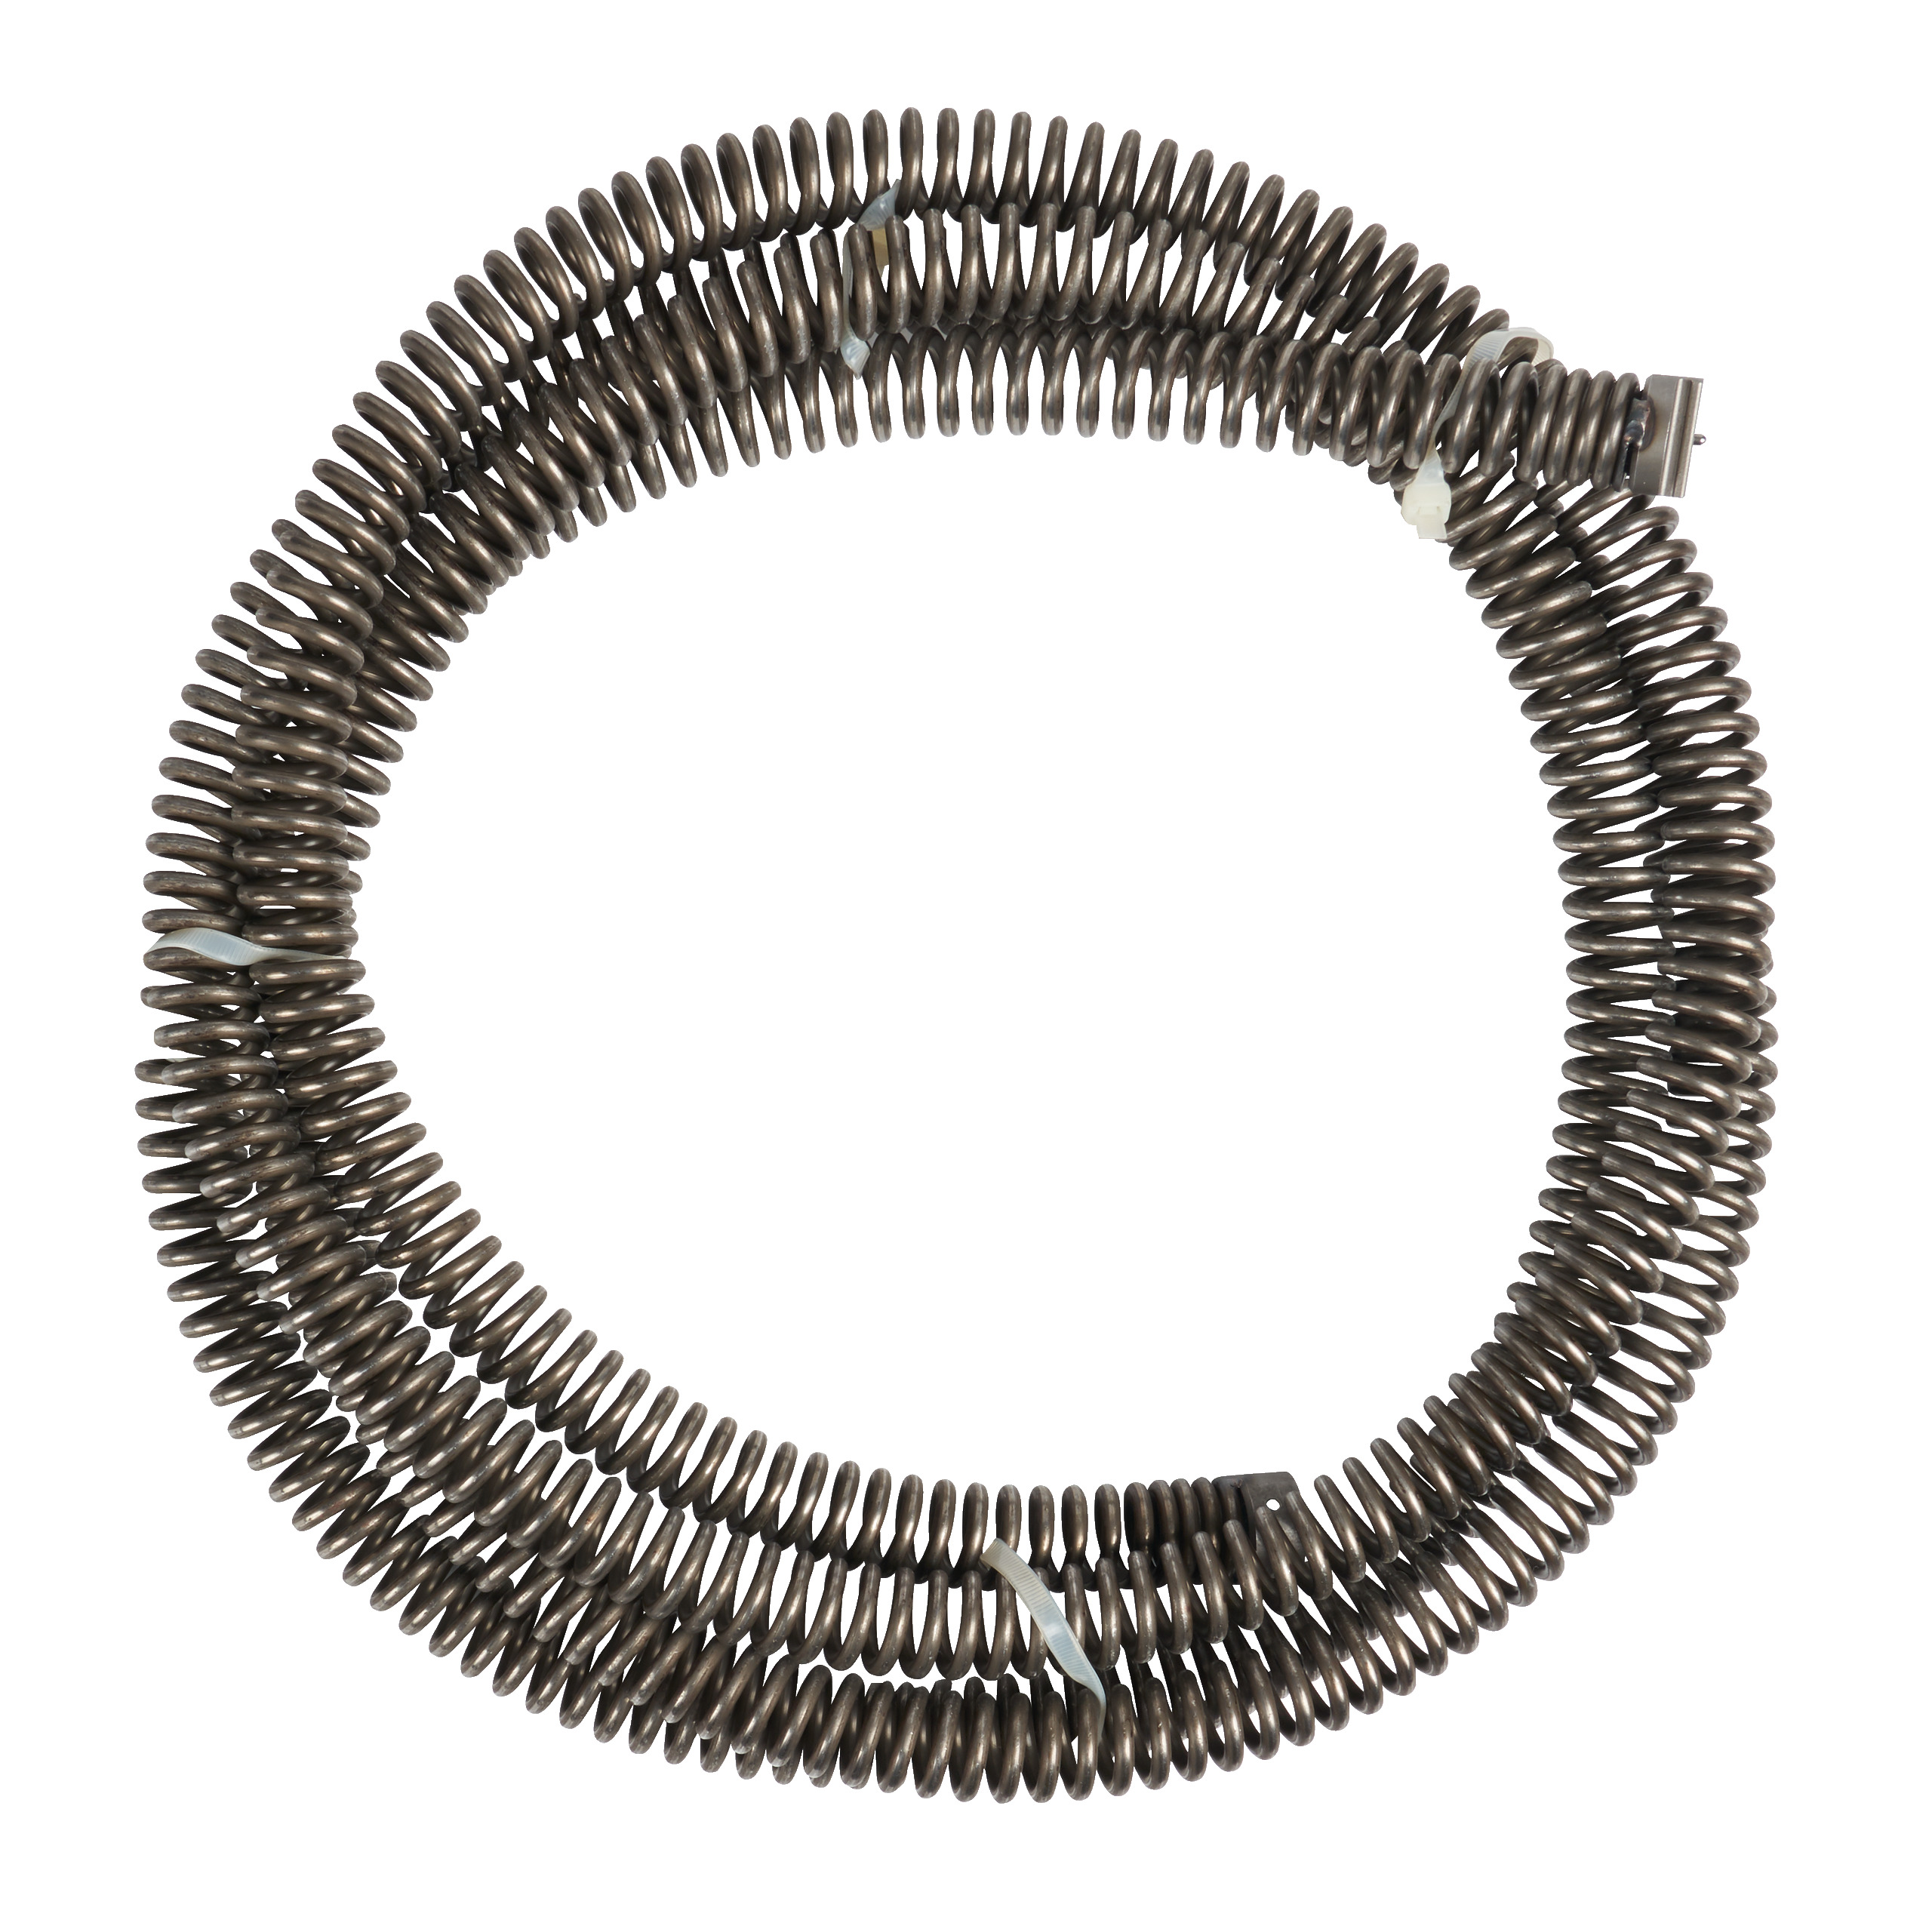 22 mm x 4,5 m Spirale mit offener Wicklung für M18FCSSM / M18FSSM